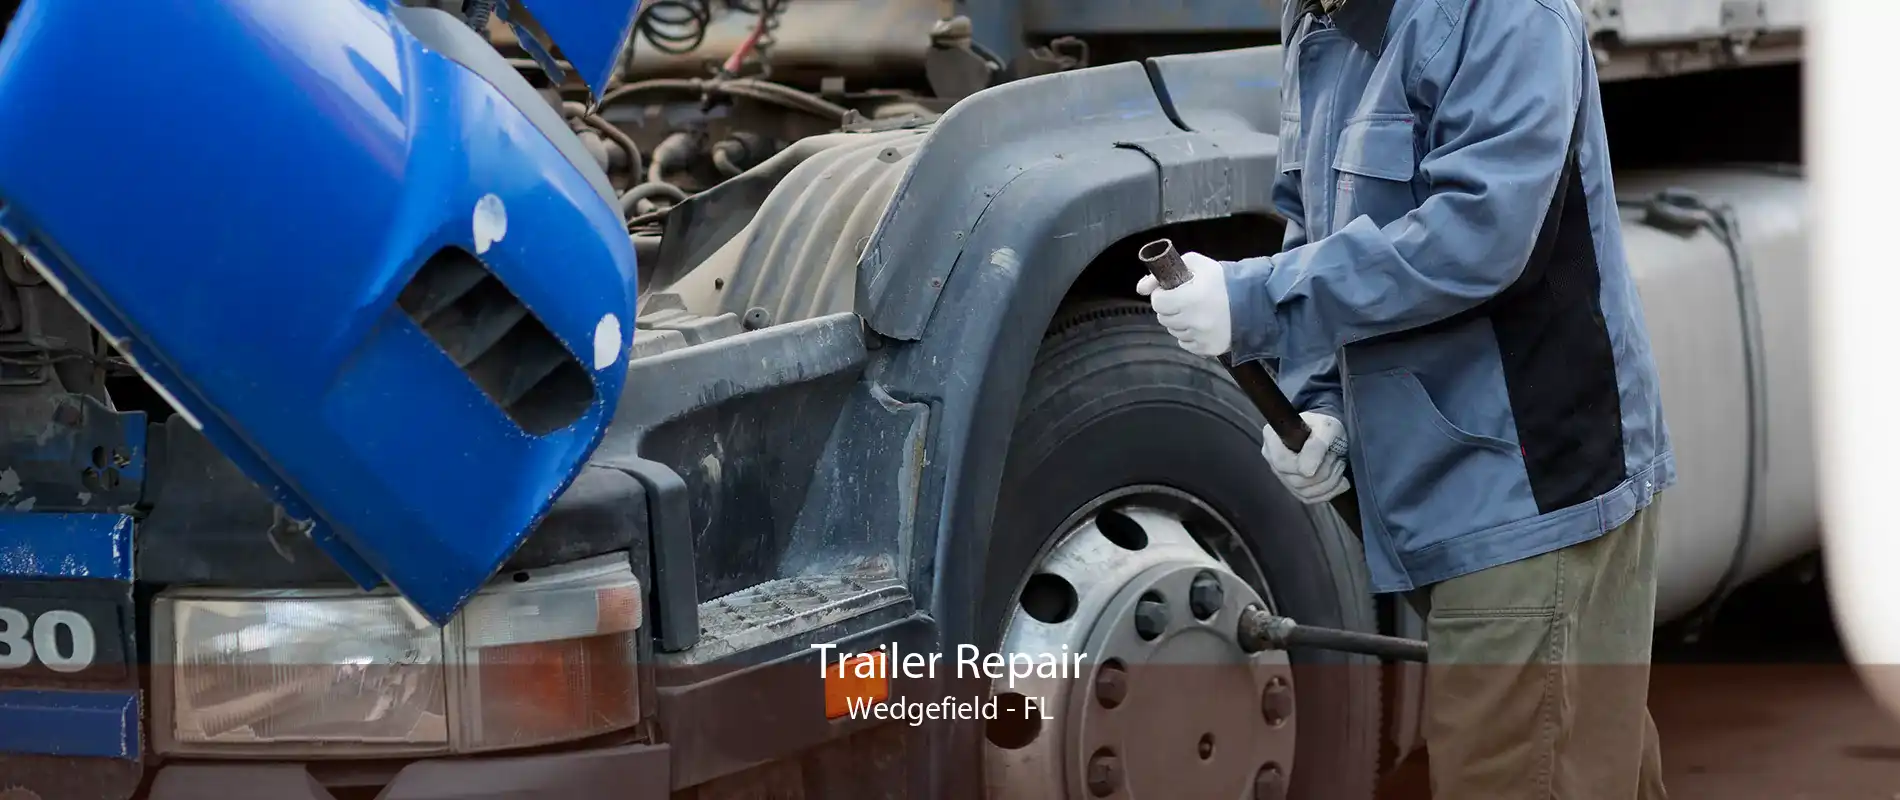 Trailer Repair Wedgefield - FL